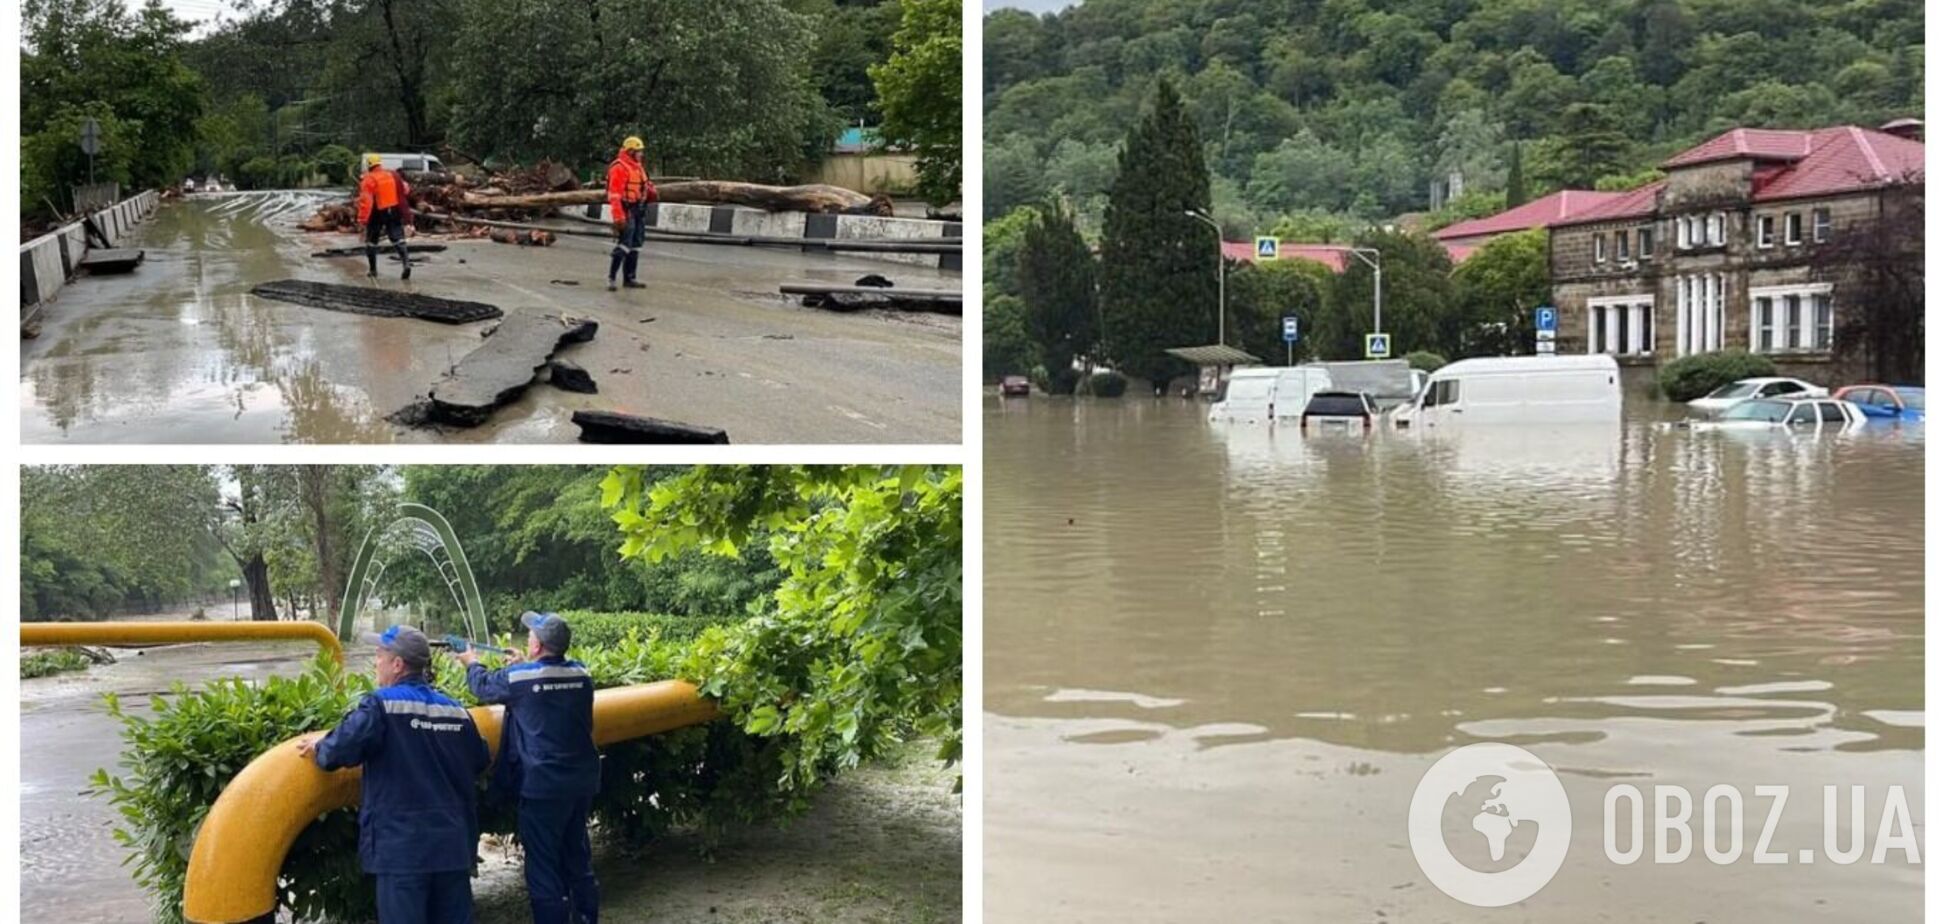 Улицы превратились в реки: в Сочи река вышла из берегов, затопило дома. Видео